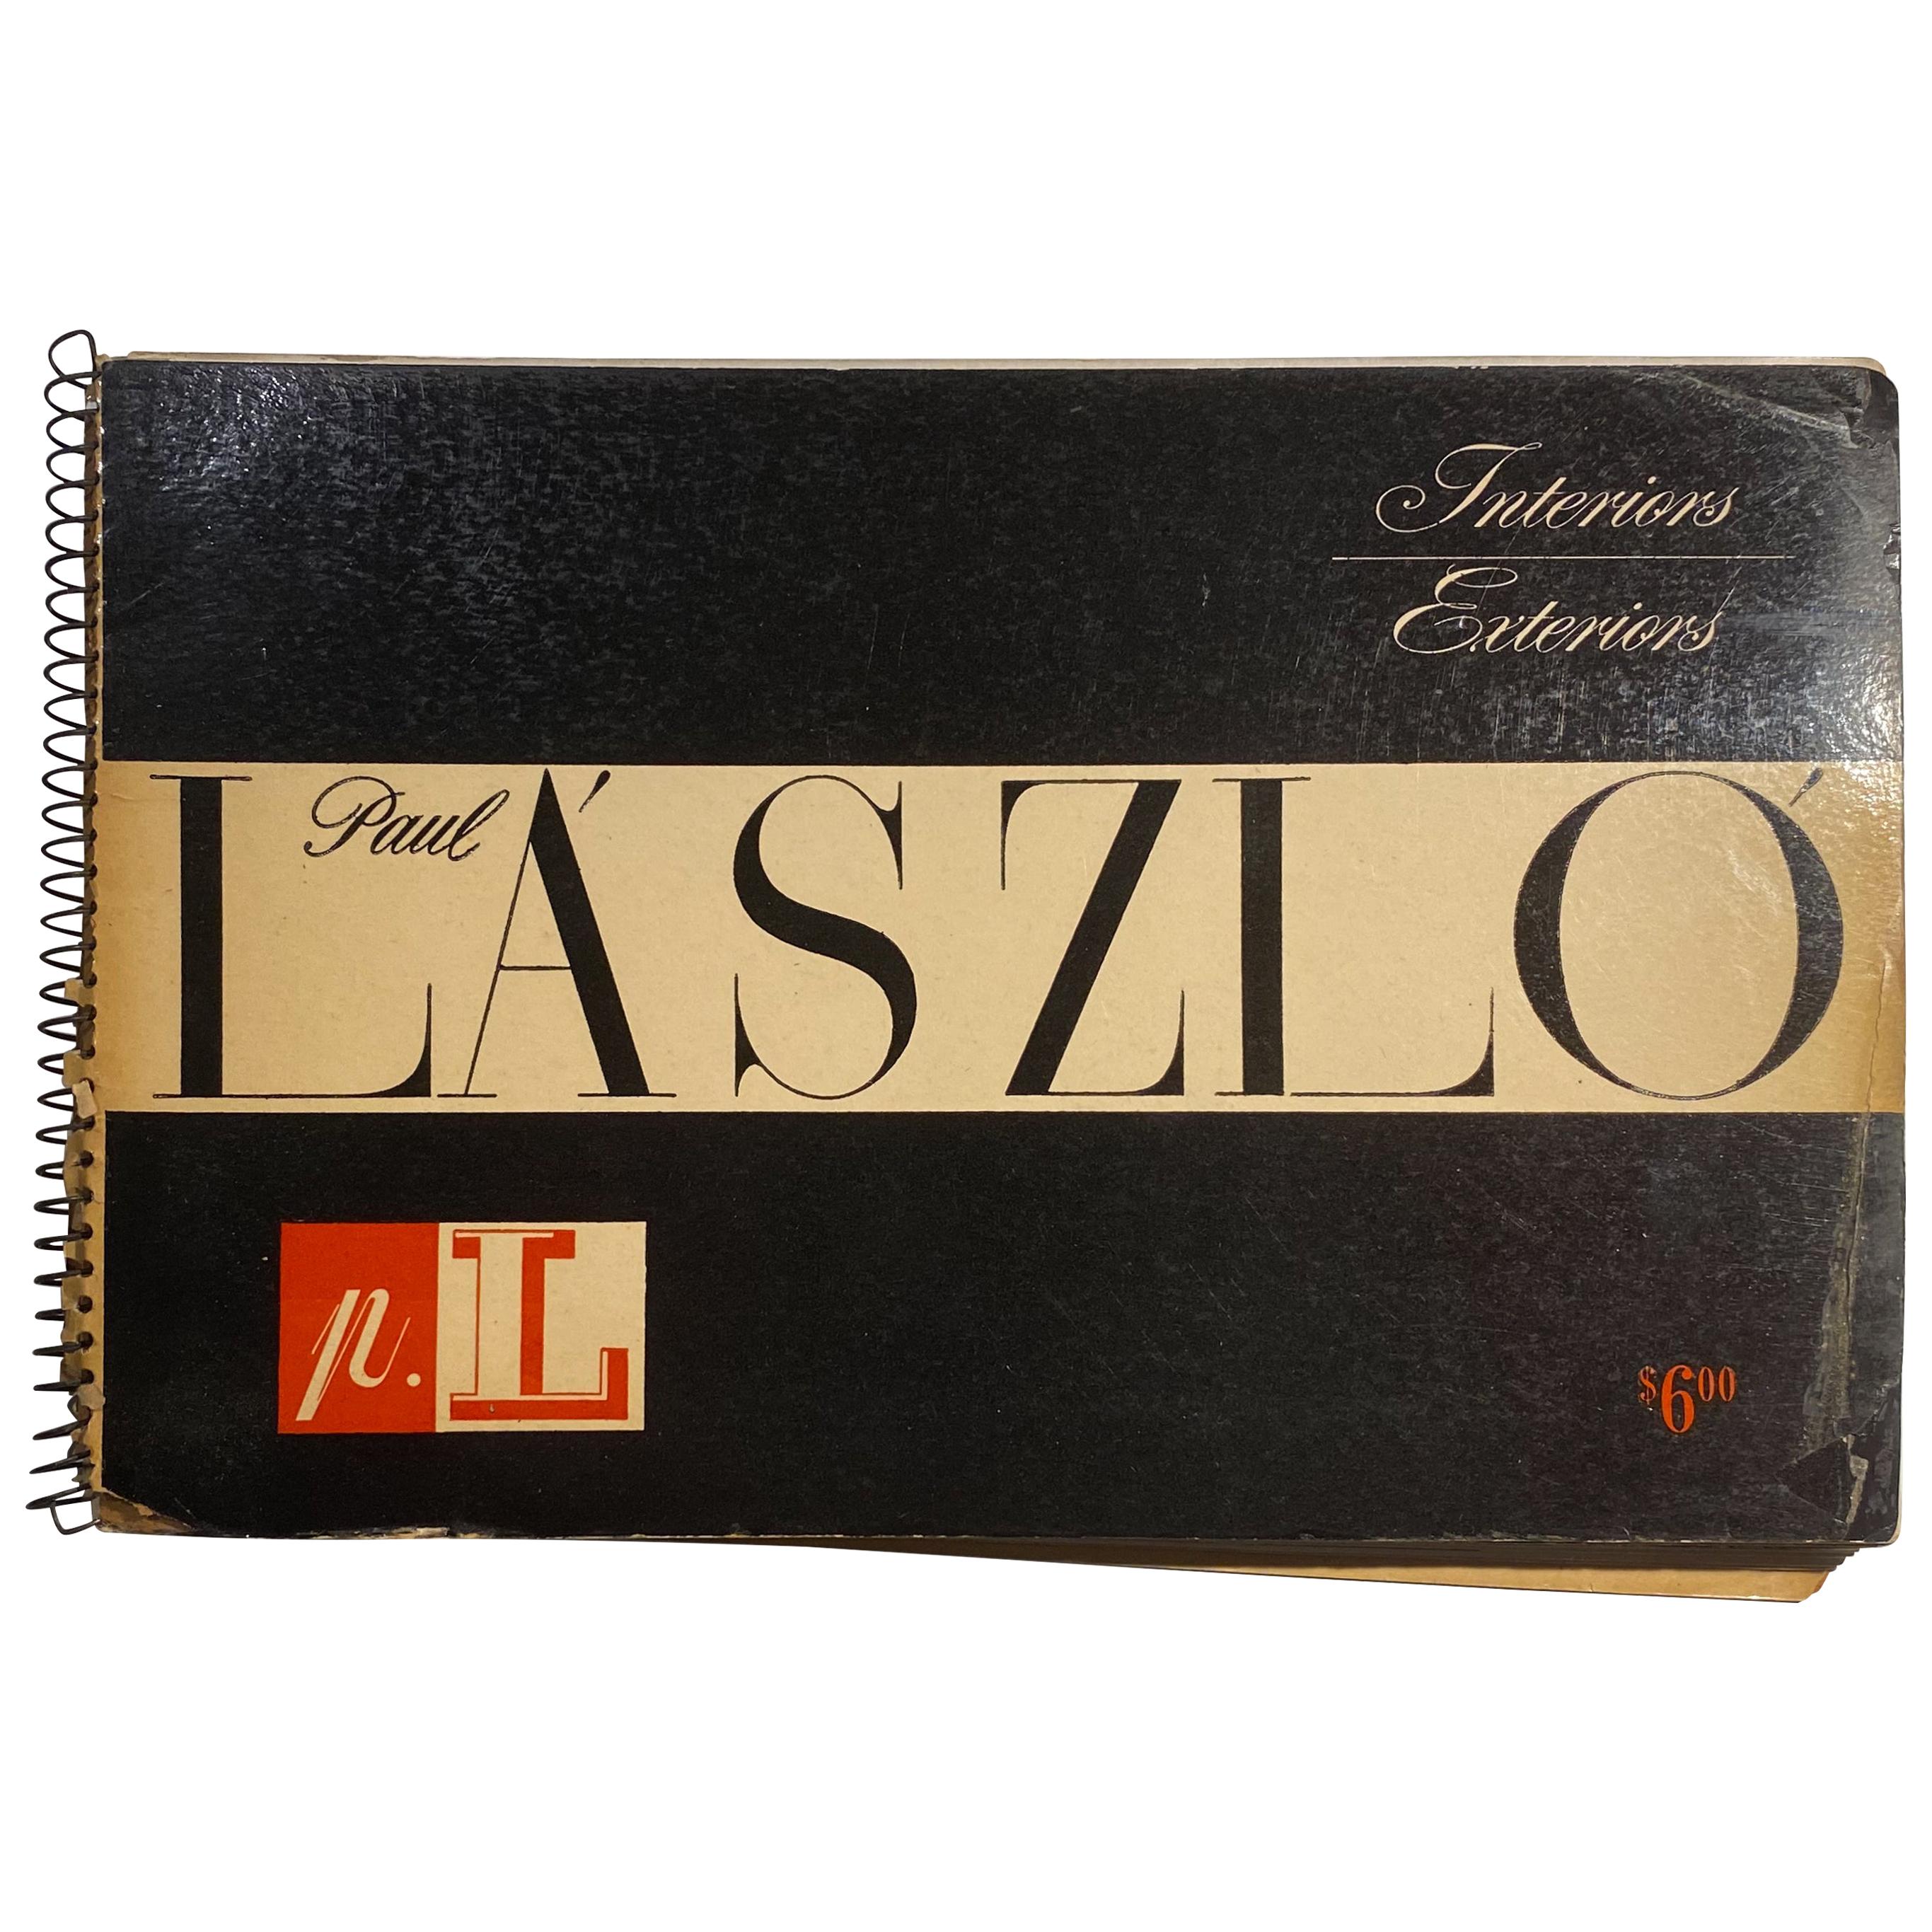 Paul Laszlo Catalog from 1947